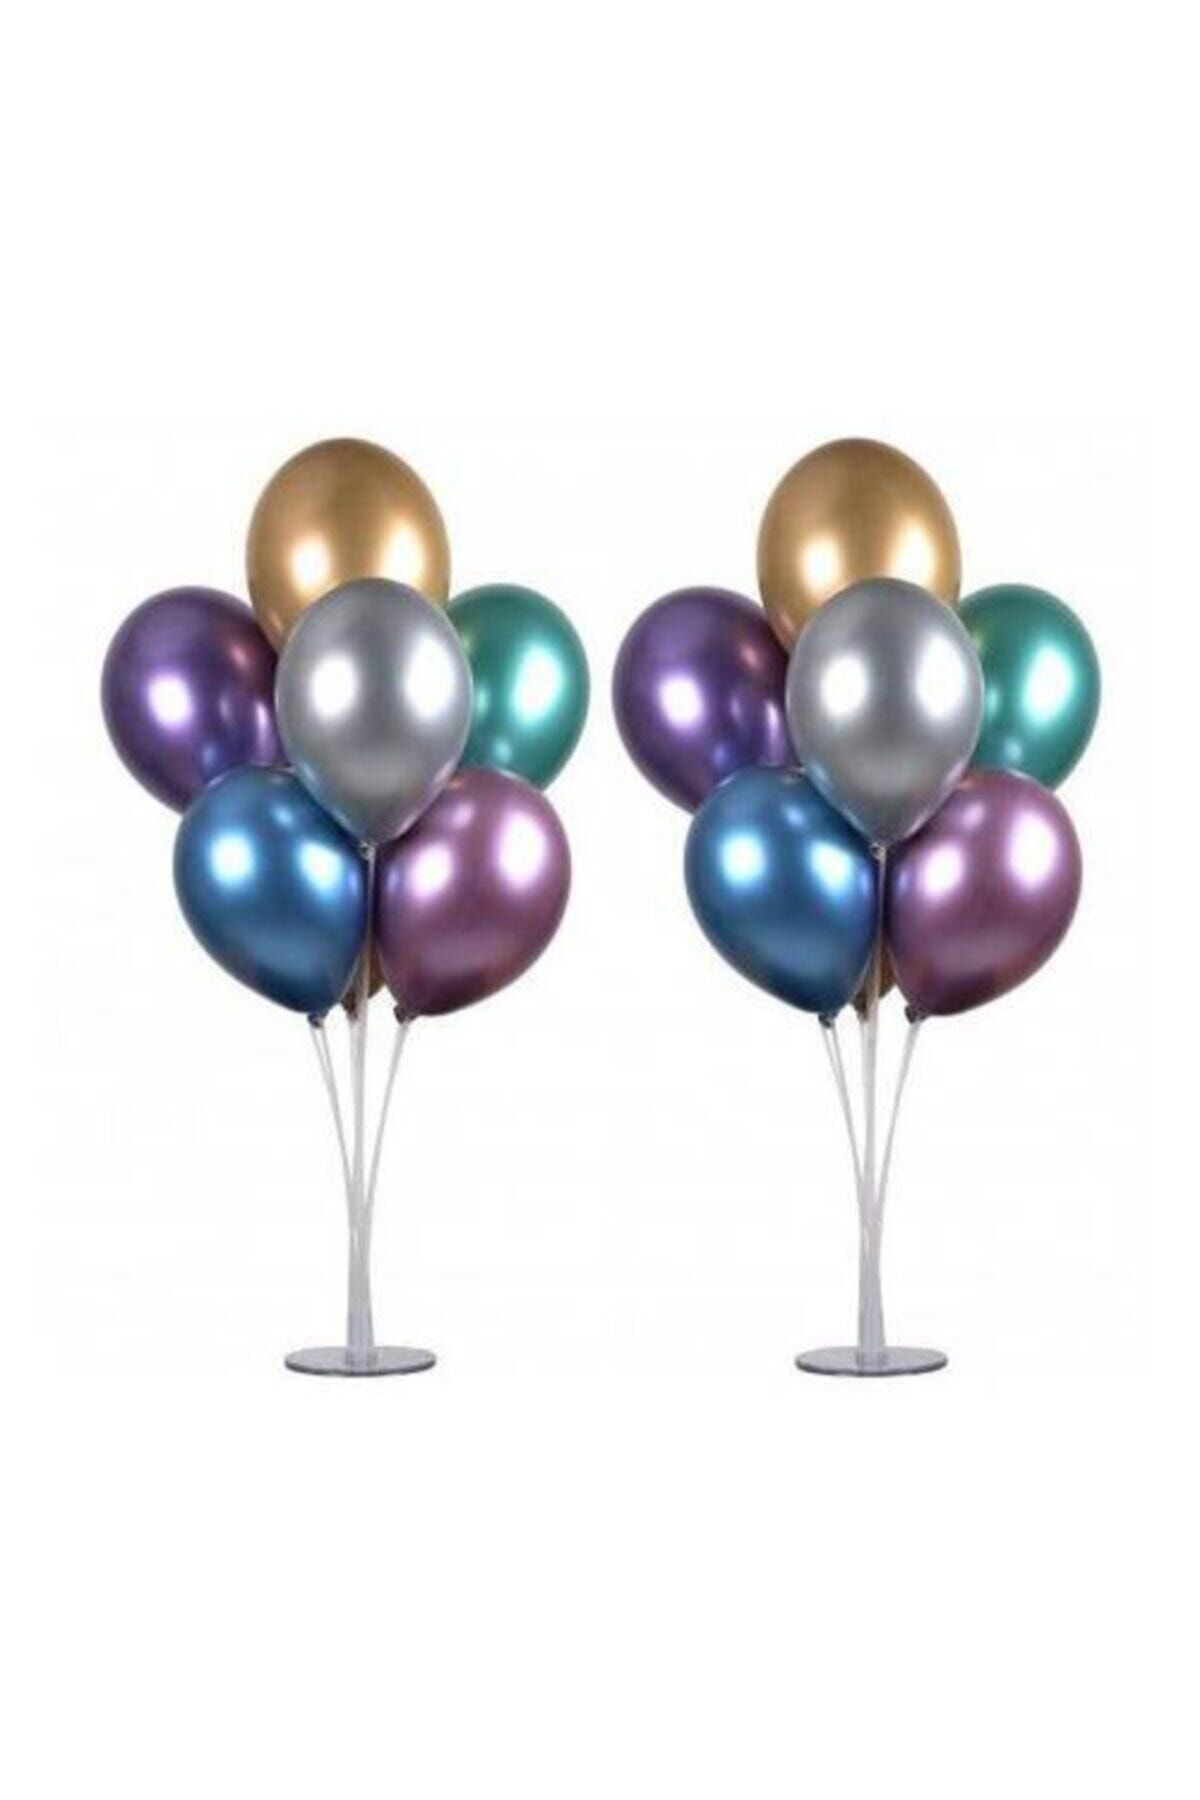 TATLI GÜNLER Balon Standı 7 Çubuklu 75 Cm Ve 7 Adet Metalik Balon